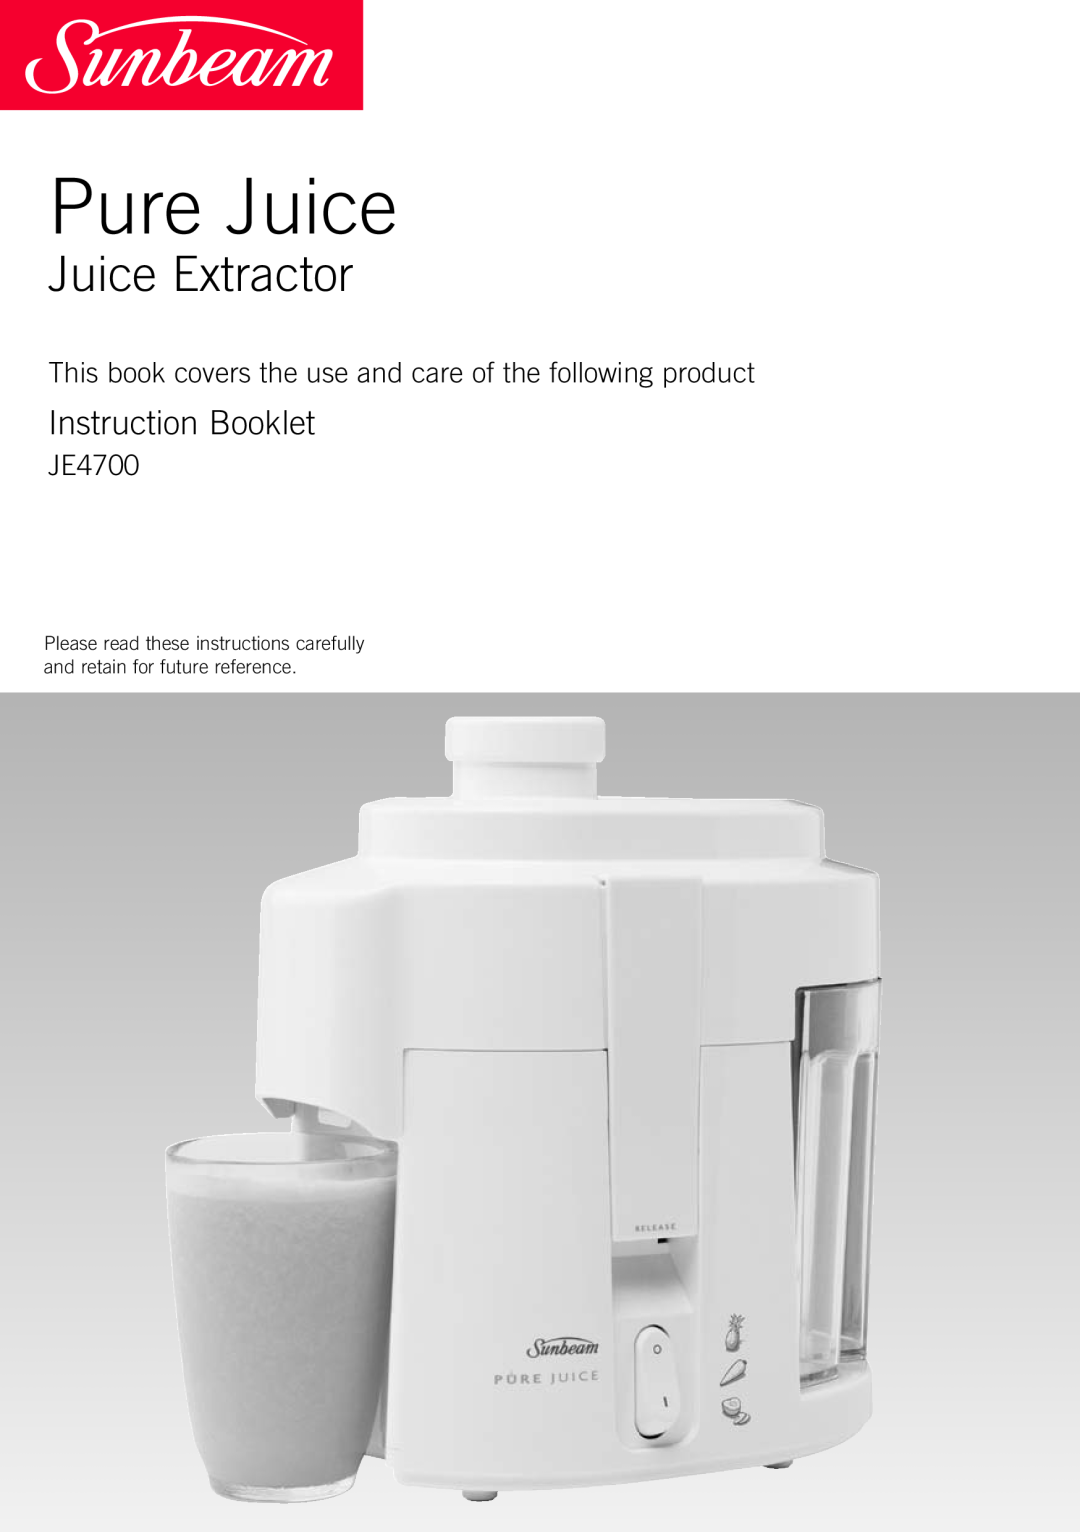 Sunbeam JE4700 manual Pure Juice, Juice Extractor, Instruction Booklet 